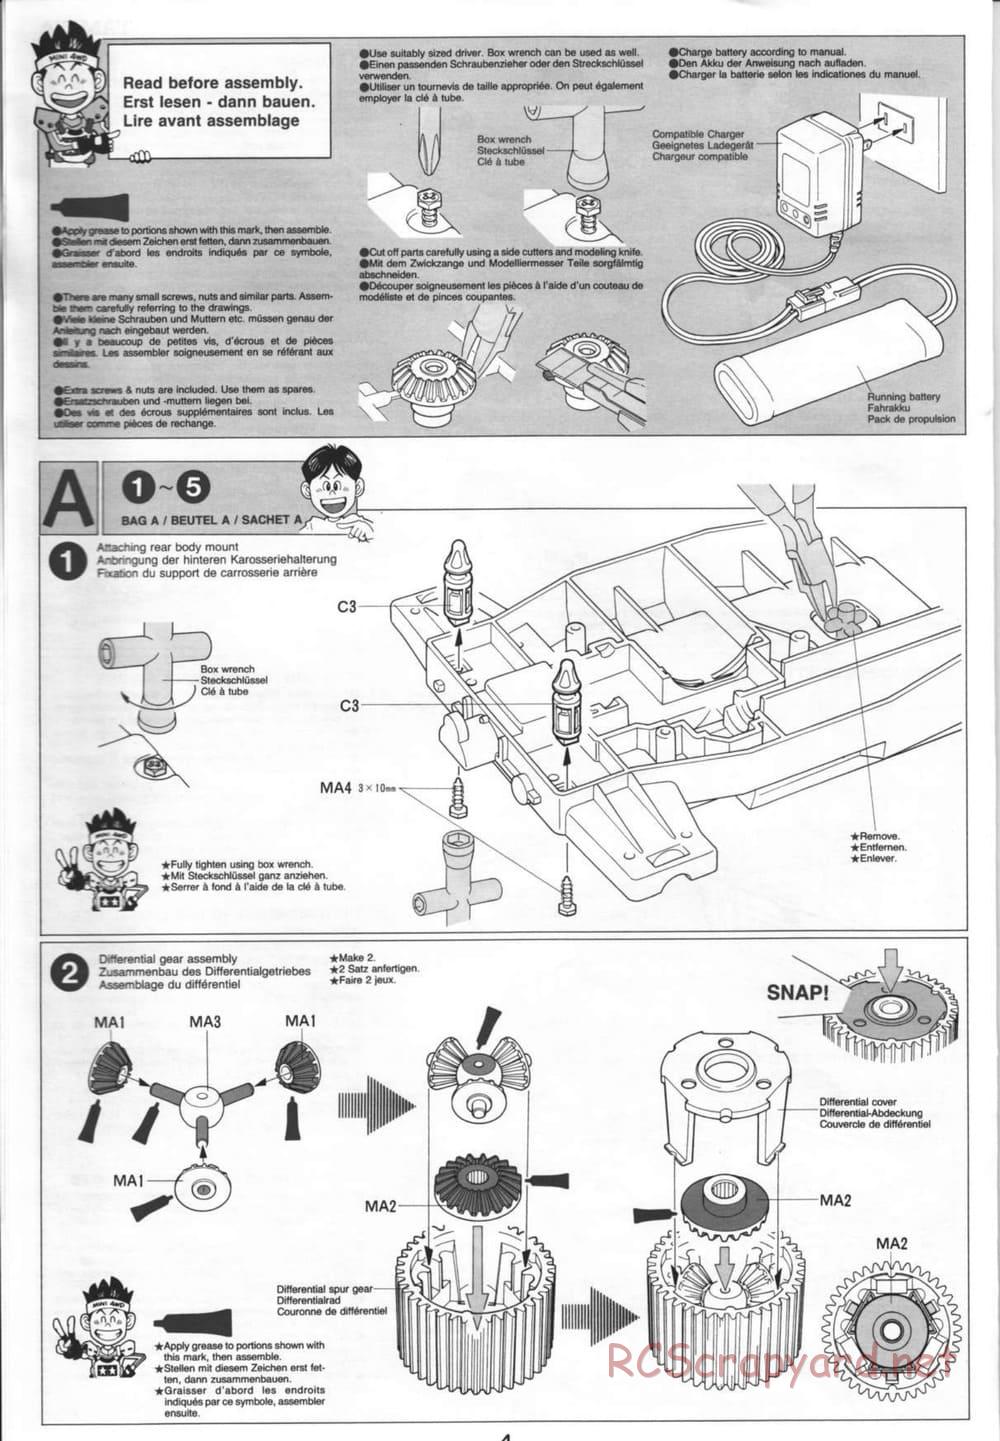 Tamiya - Thunder Blitz - Boy's 4WD Chassis - Manual - Page 4